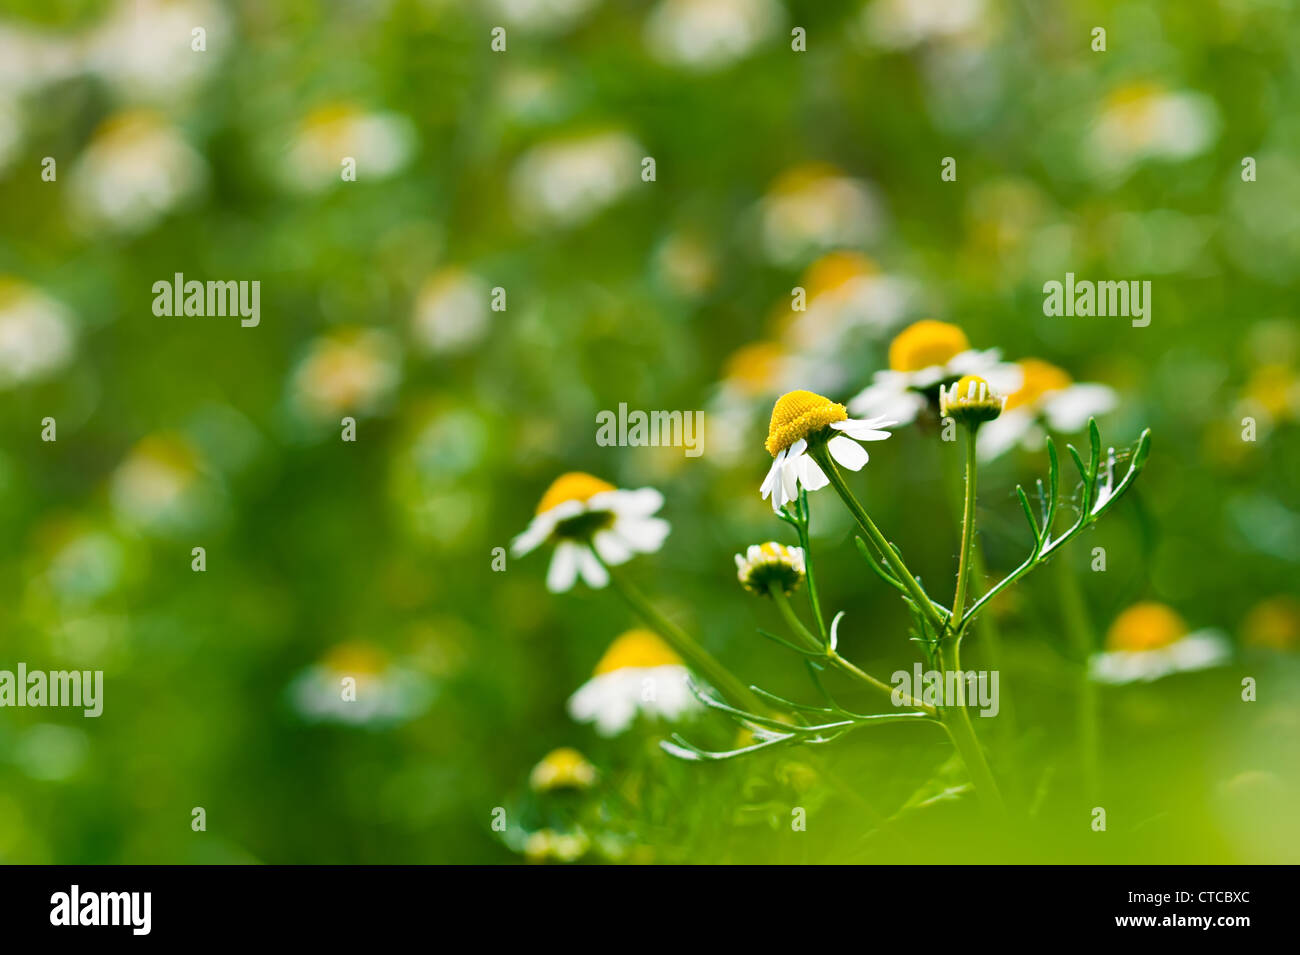 Medizin-Kamille-Blume im Feld Hintergrund. Tiefenschärfe, geringe Schärfentiefe Stockfoto